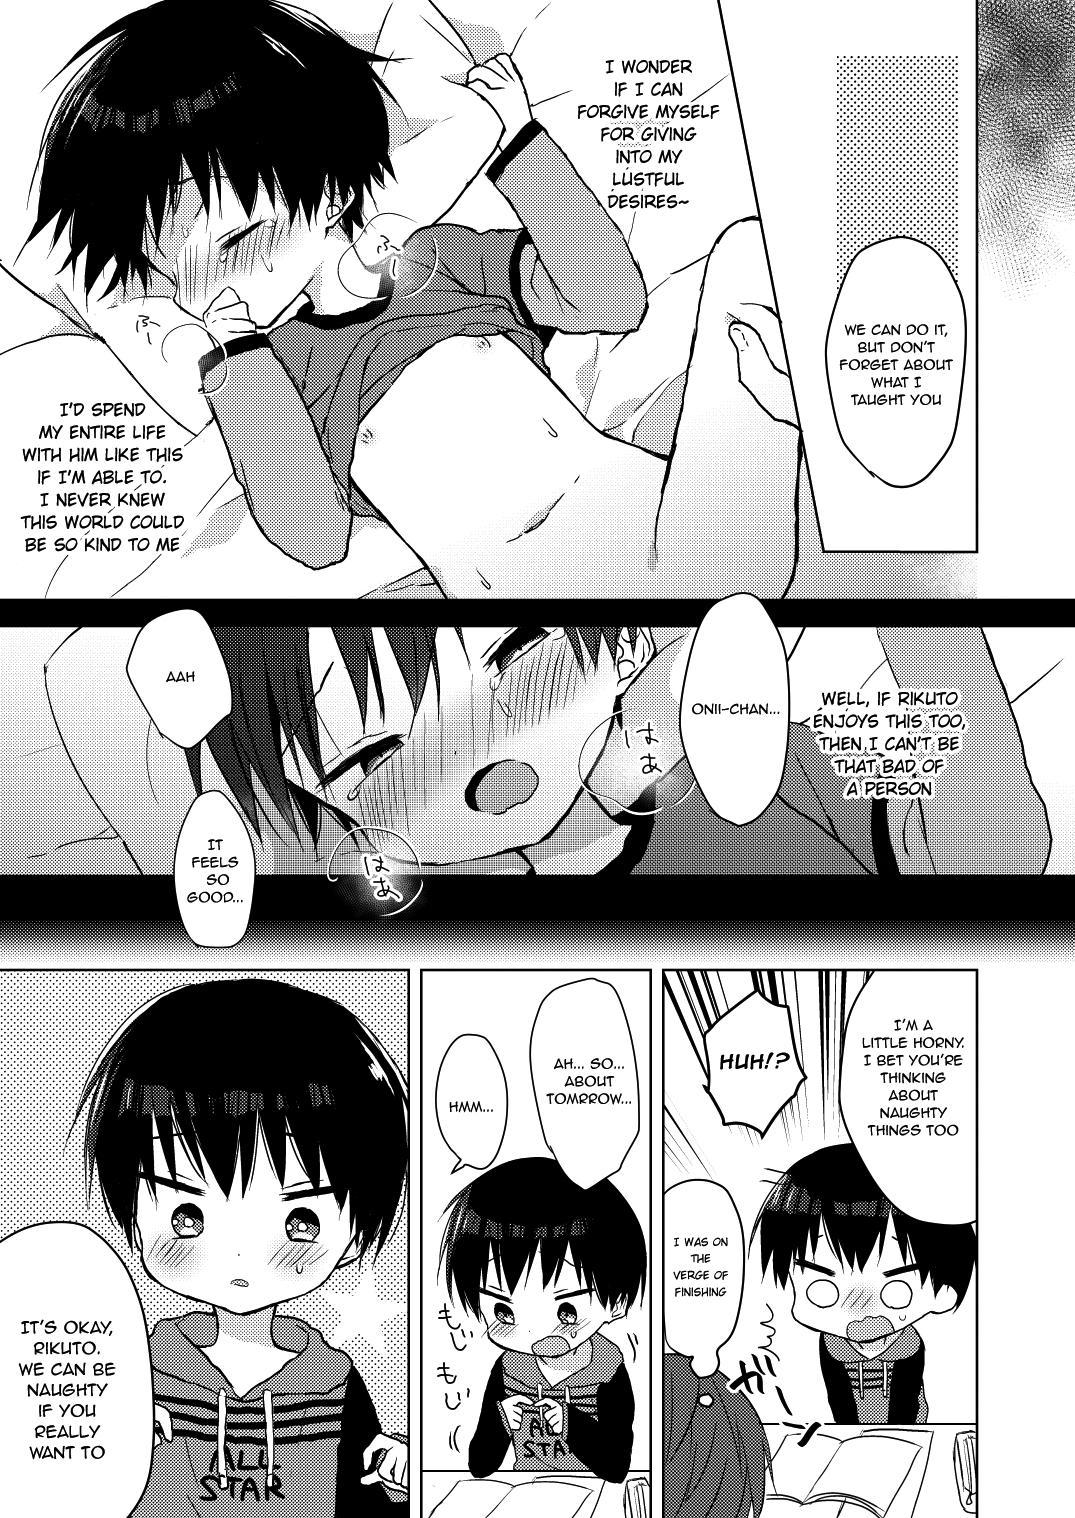 Tittyfuck Futoukou Shota no Manga Flagra - Page 4